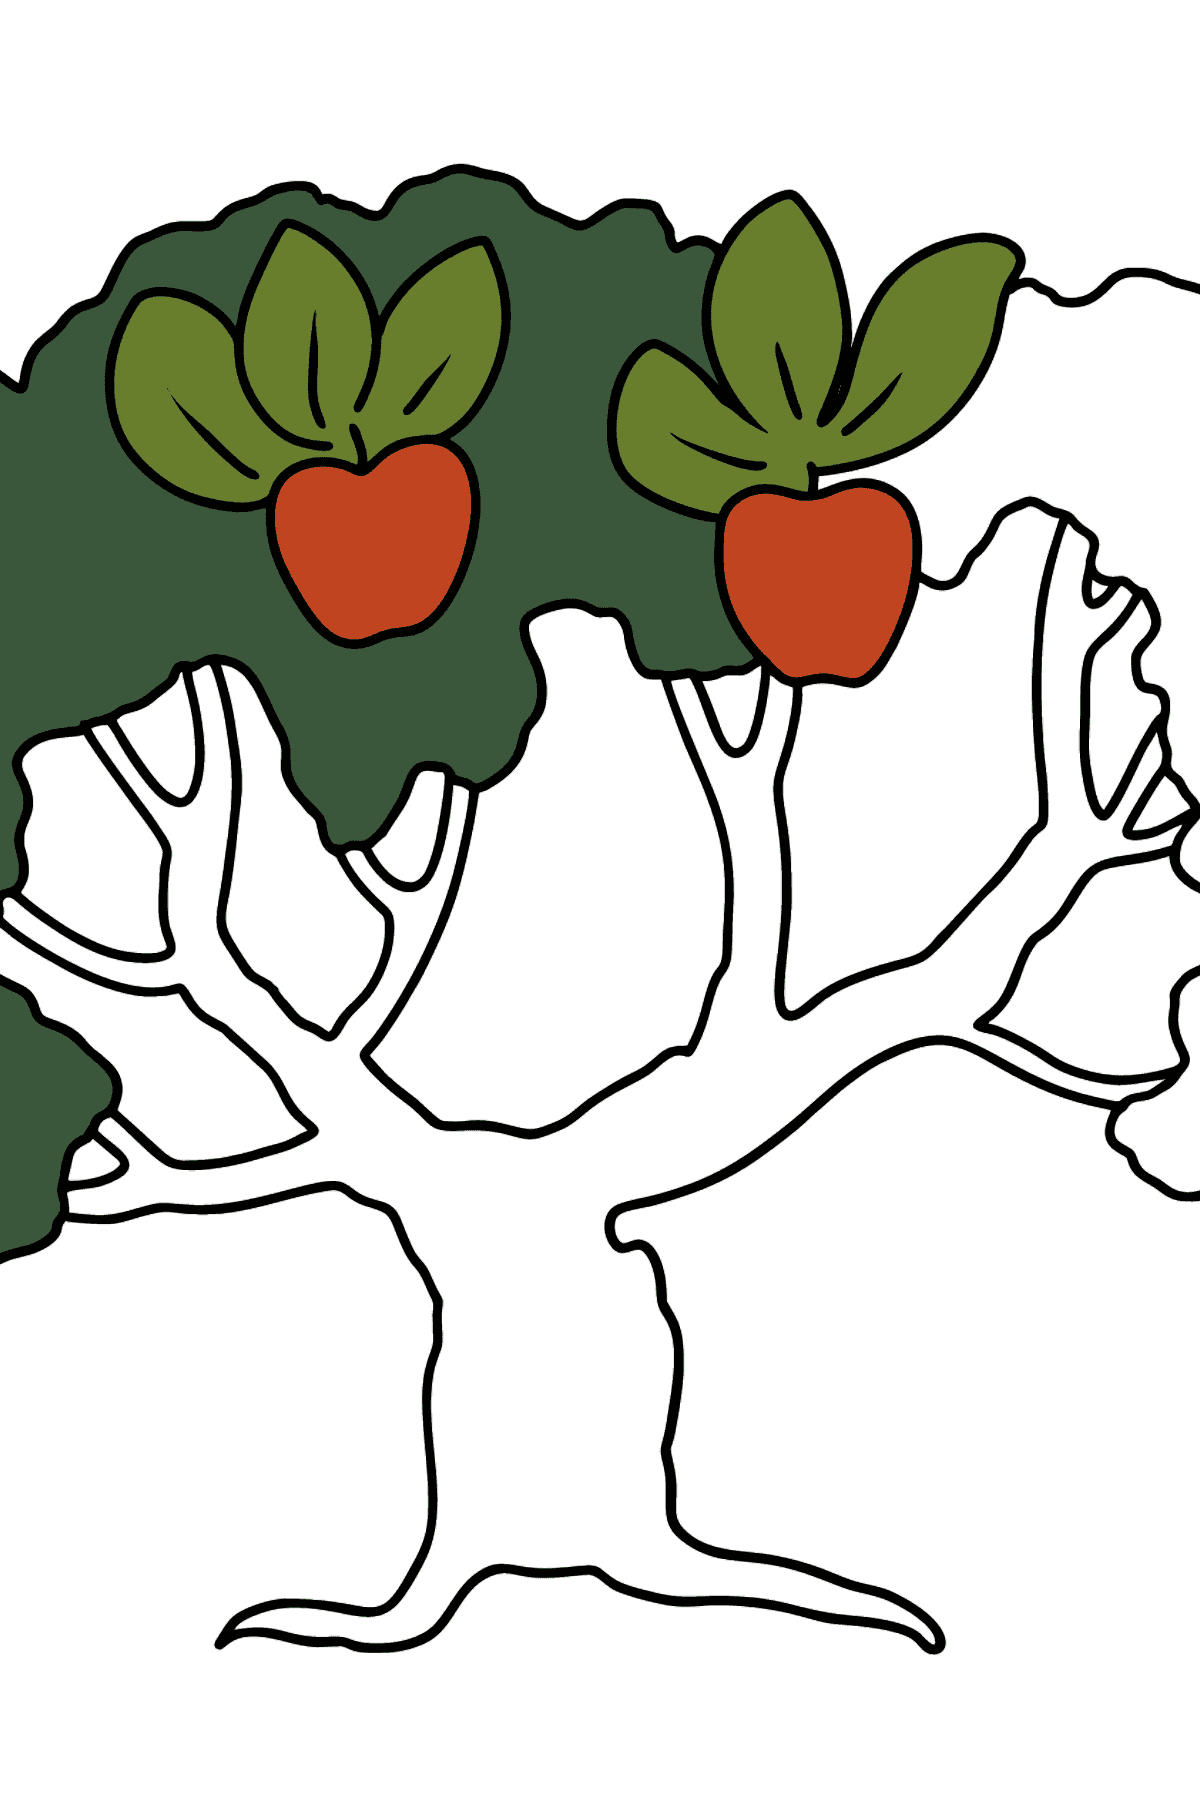 Målarbild äppelträd - Målarbilder För barn